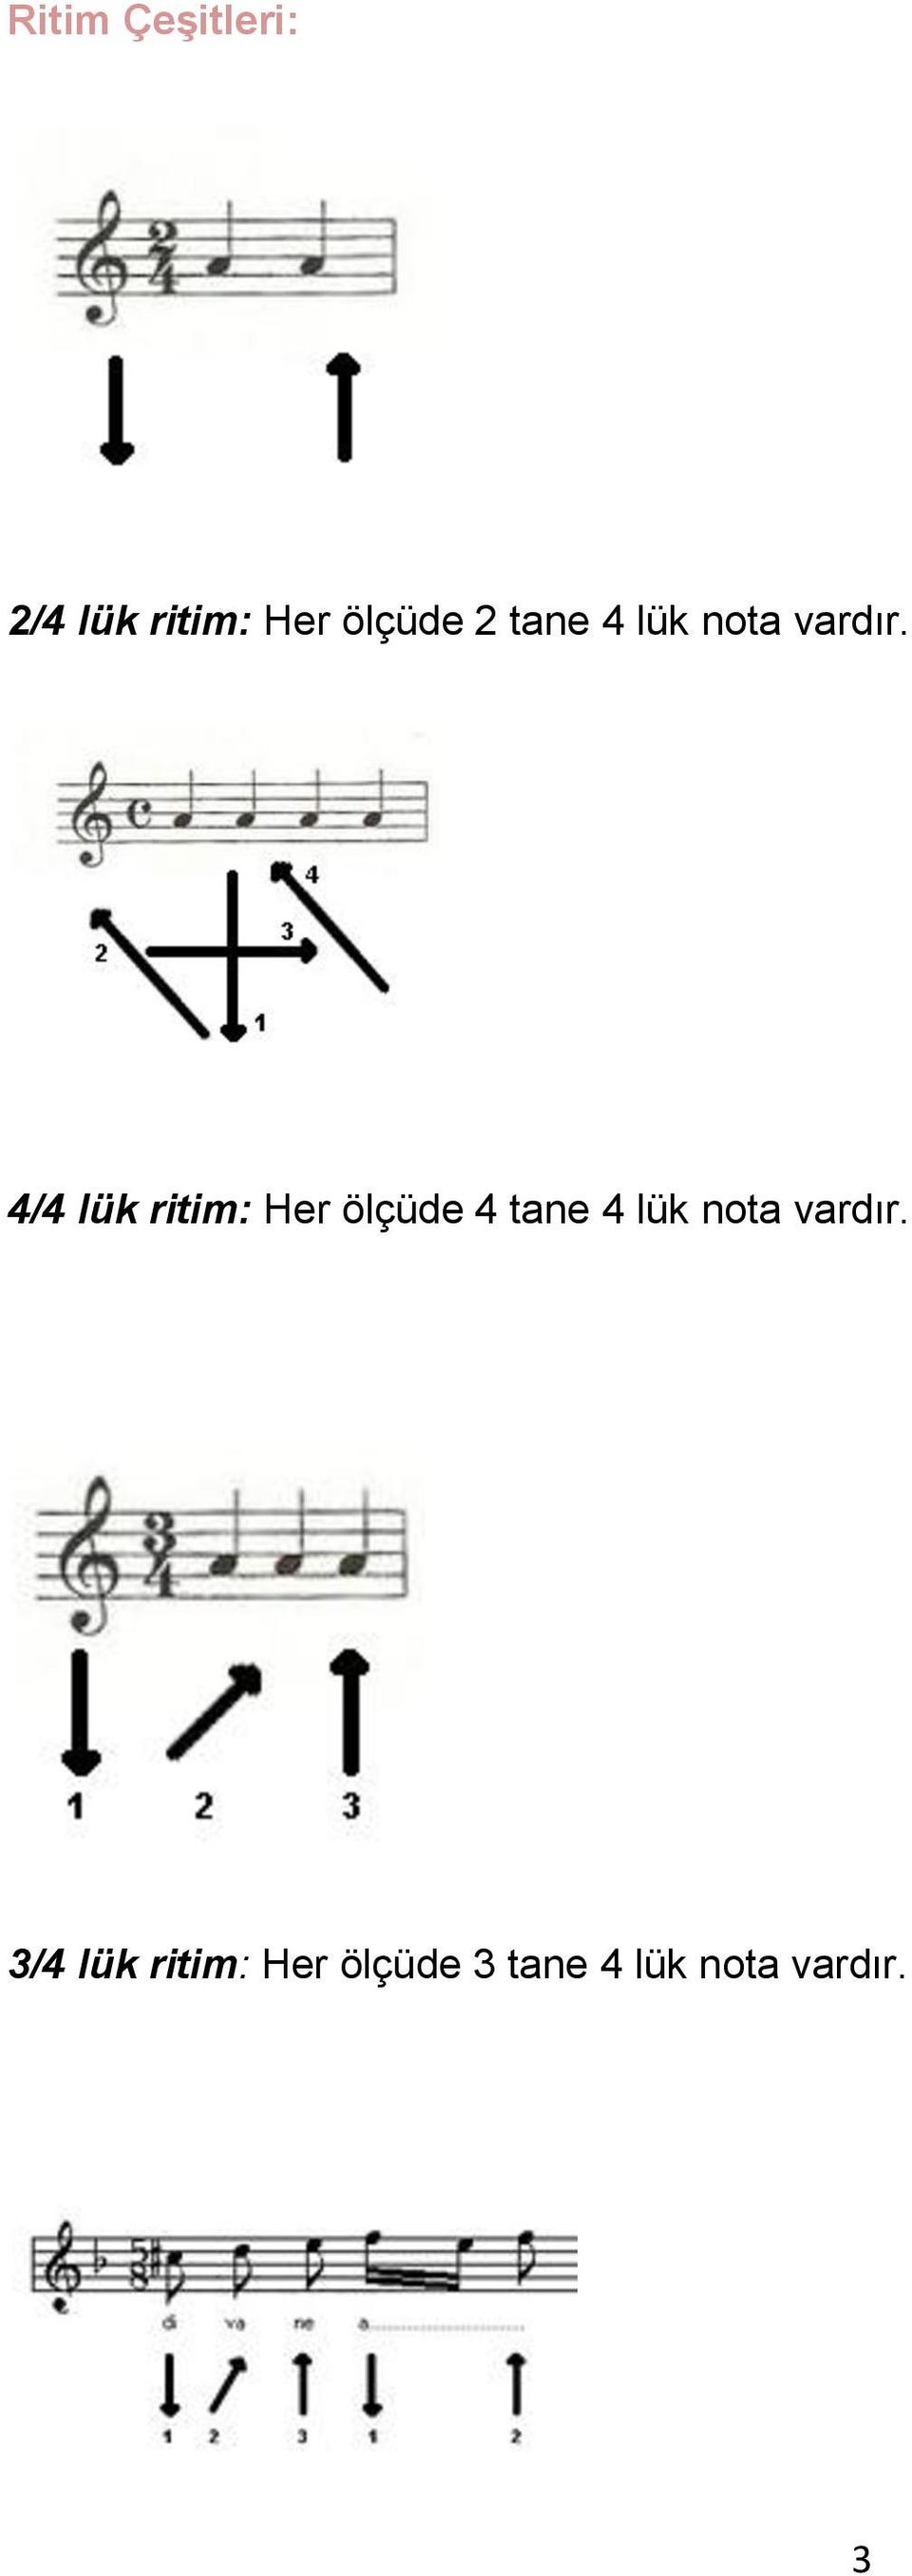 4/4 lük ritim: Her ölçüde 4 tane 4 lük nota